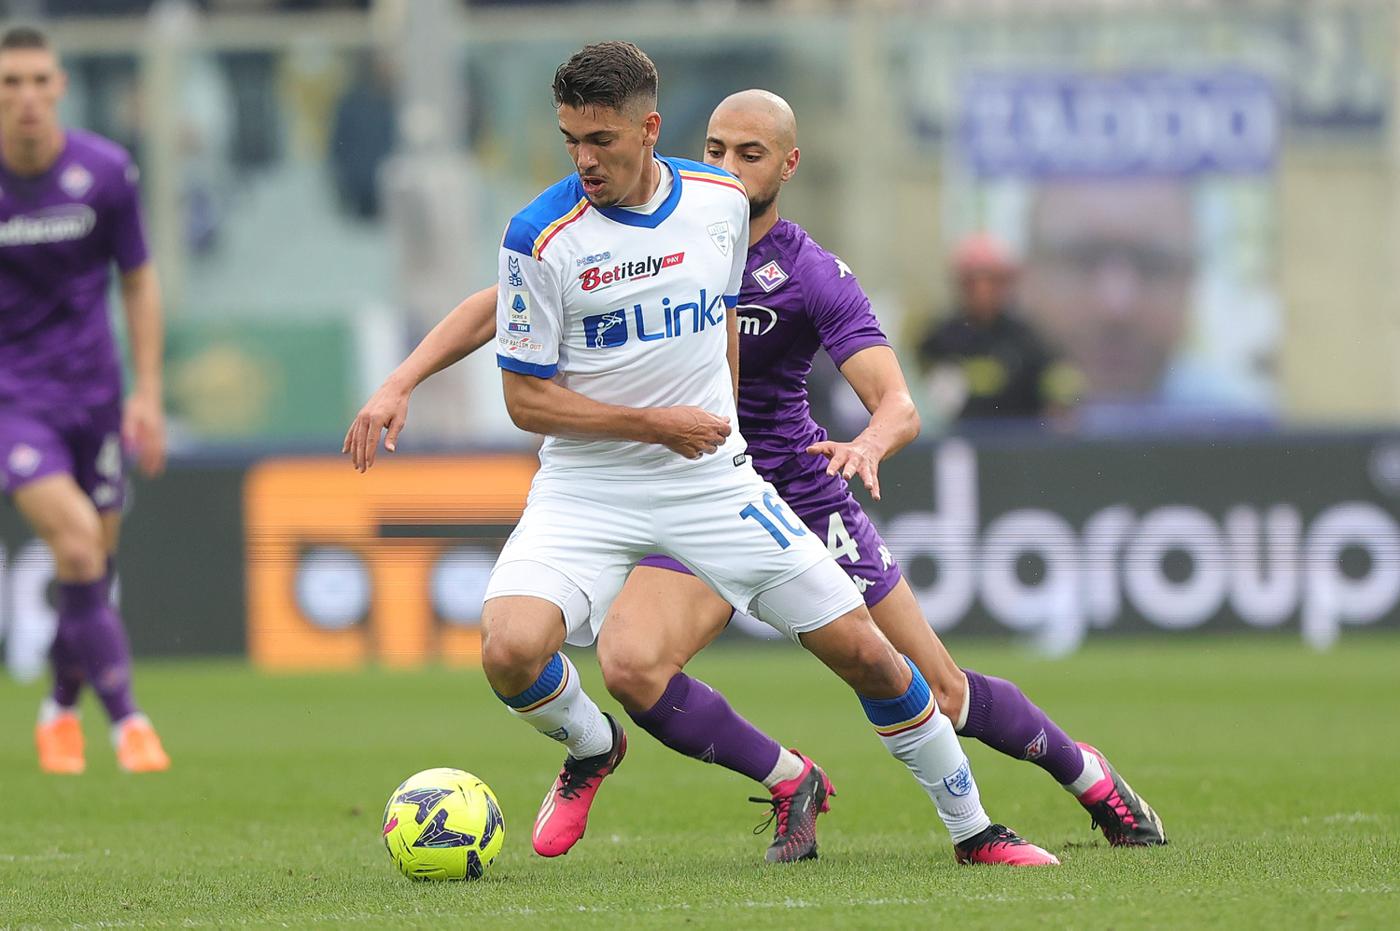 Fiorentina - Lecce - 1:0. Mistrzostwa Włoch, runda 27. Przegląd meczów, statystyki.